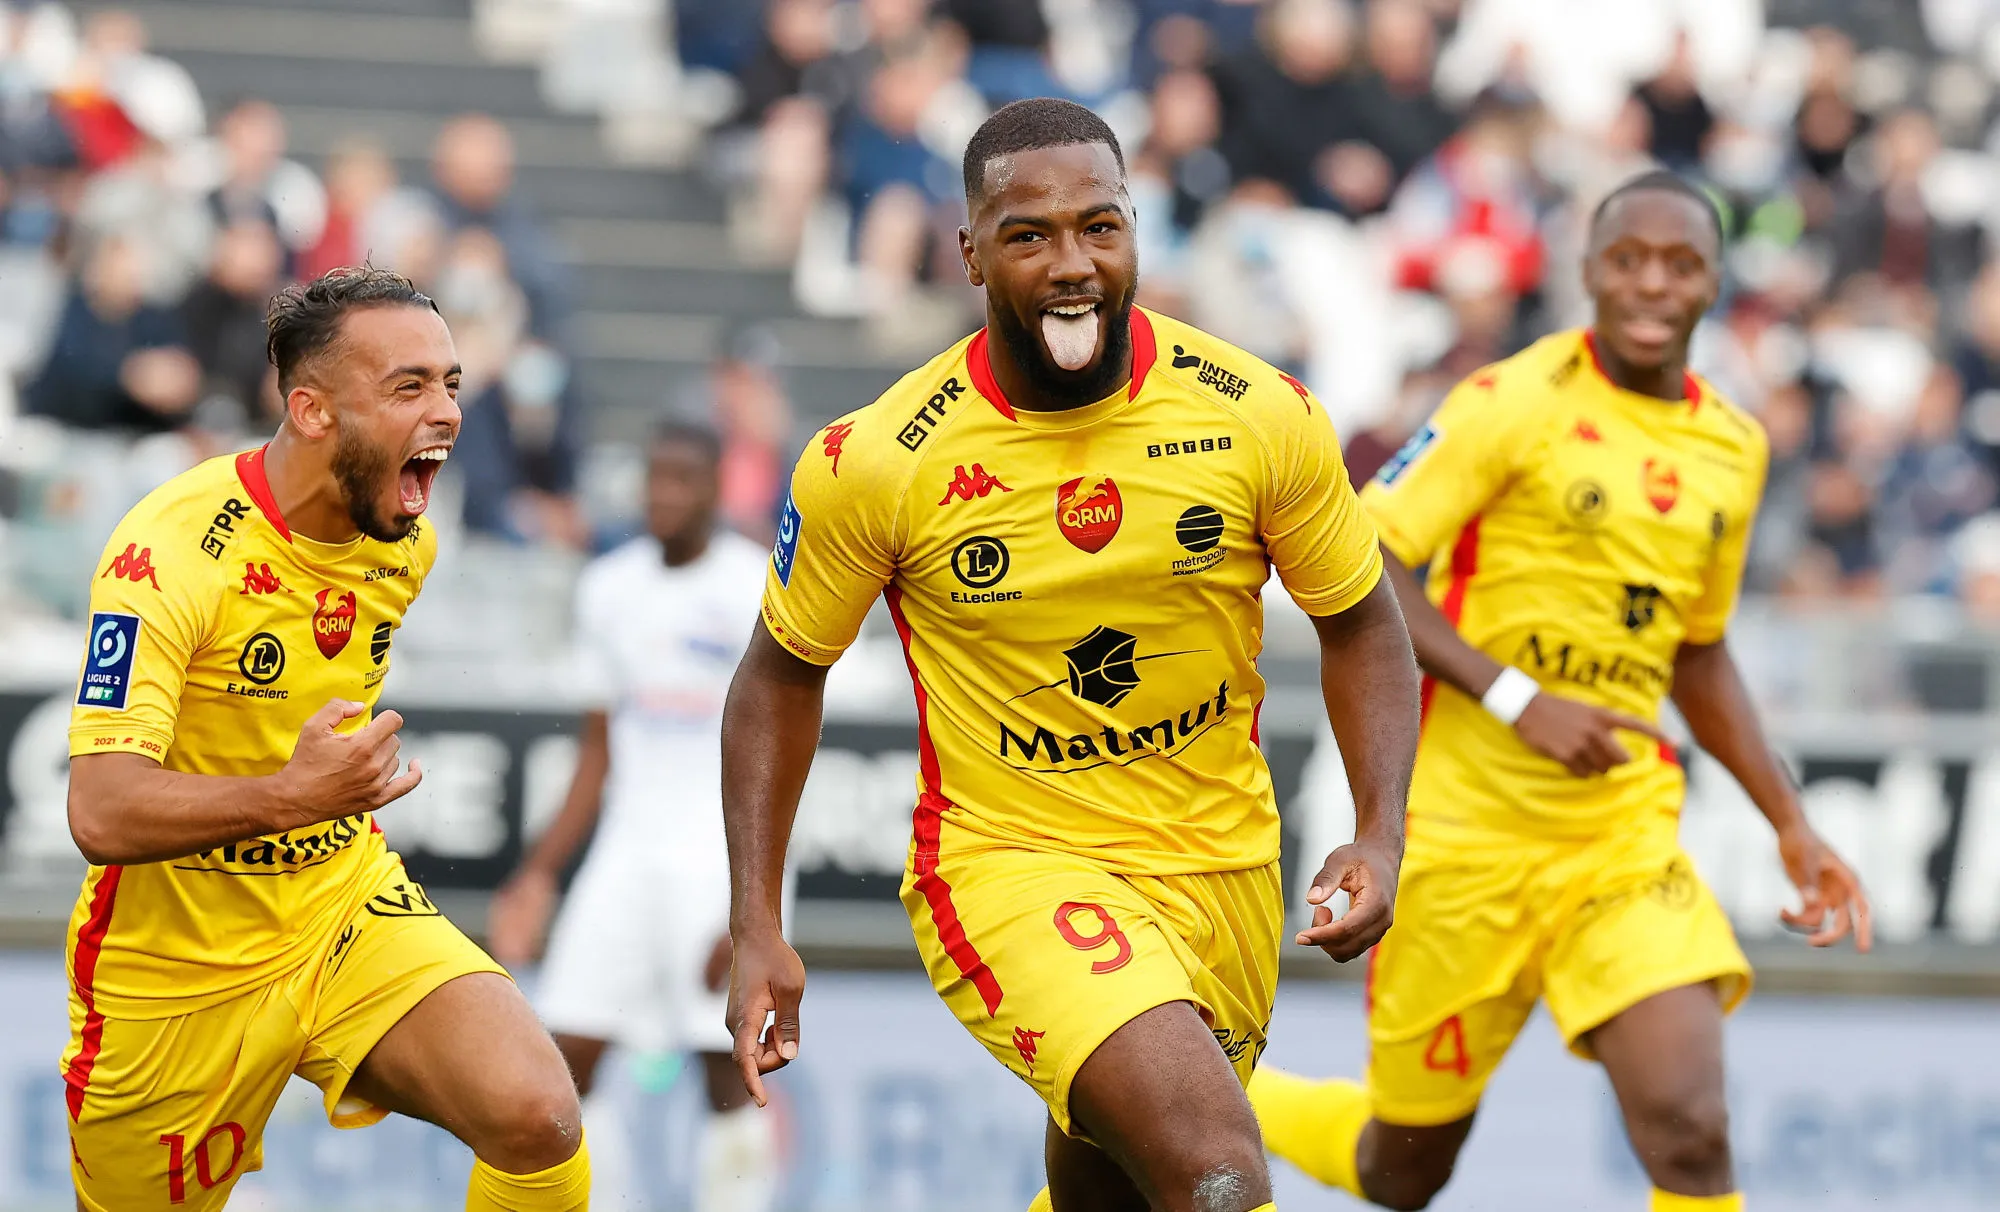 Pronostic Quevilly Rouen Bastia : Analyse, cotes et prono du match de Ligue 1